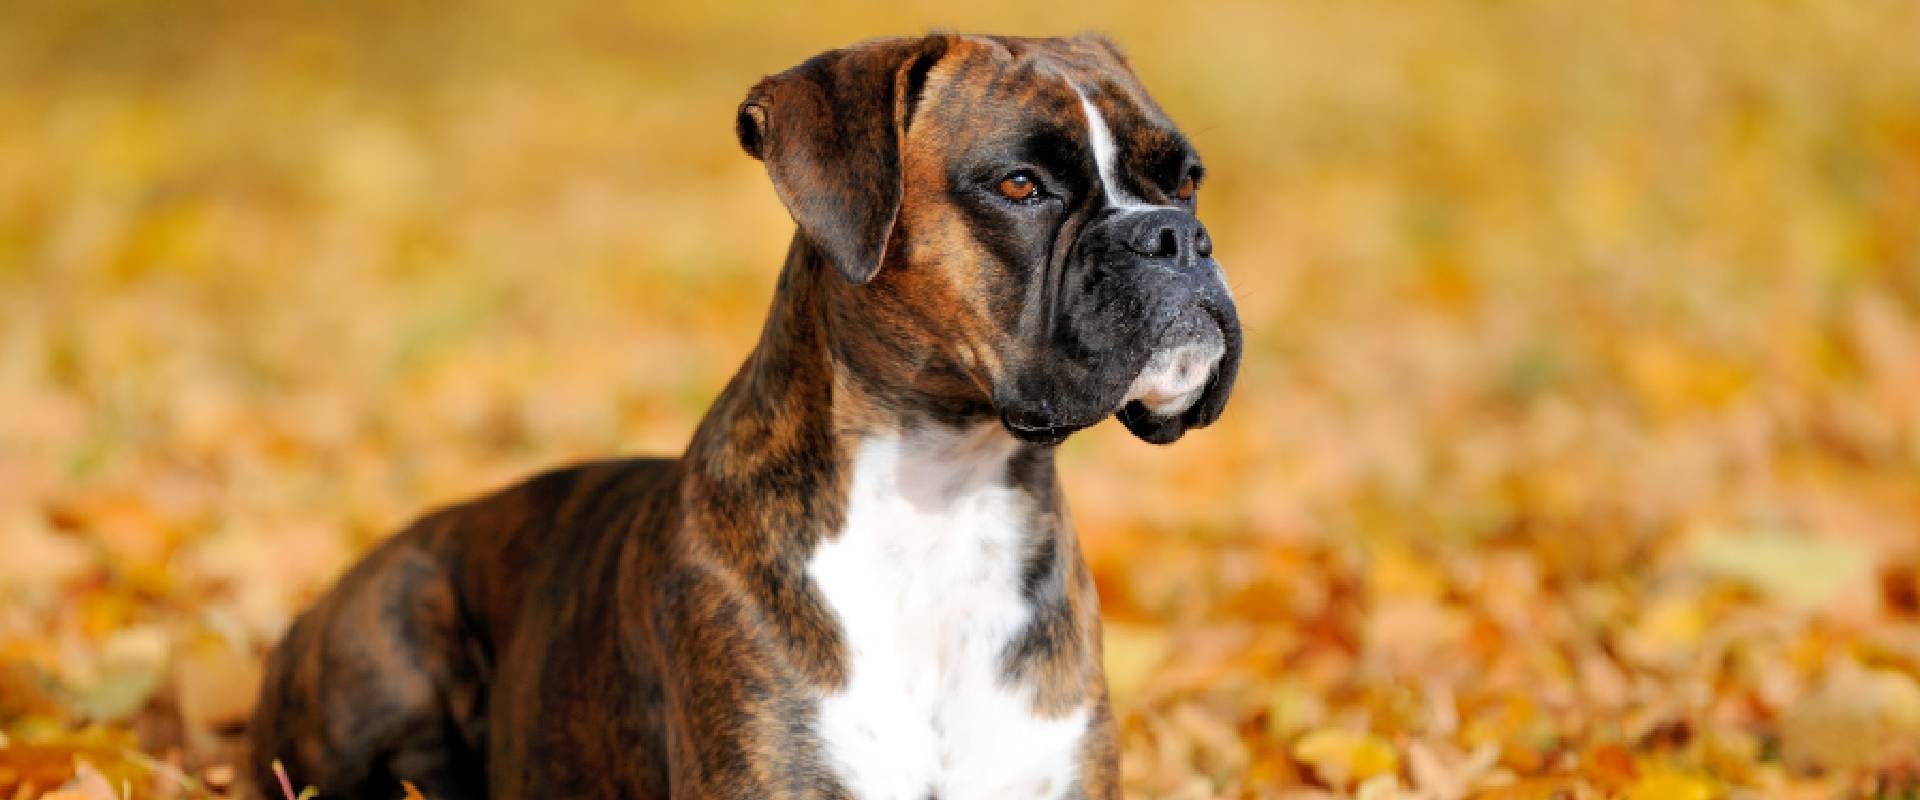 Boxer dog - a descendent of the Bullenbeisser